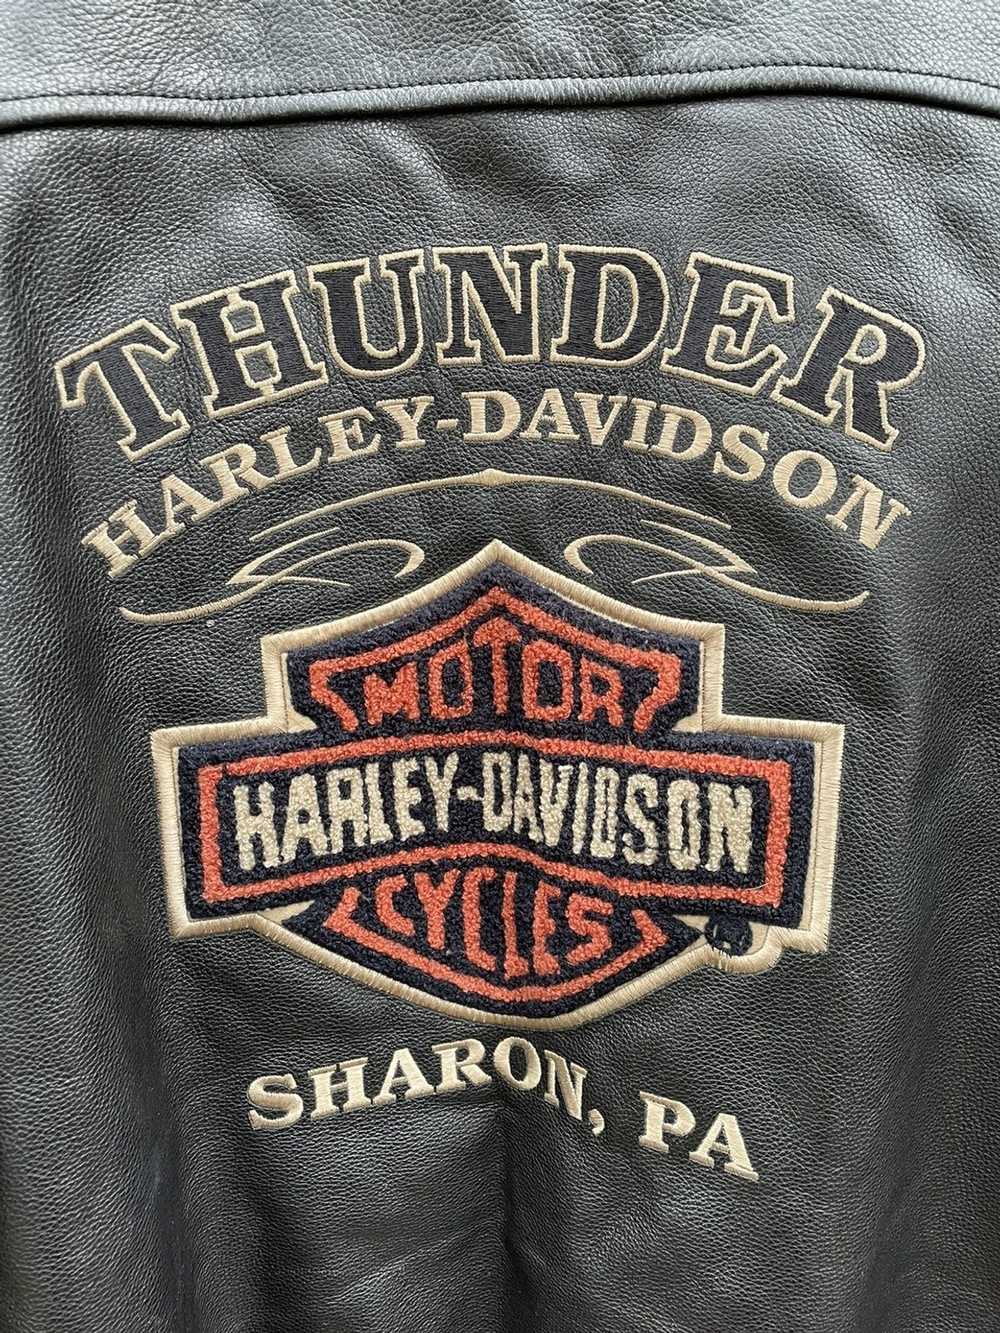 Harley Davidson Harley Davidson Men Distressed Le… - image 5